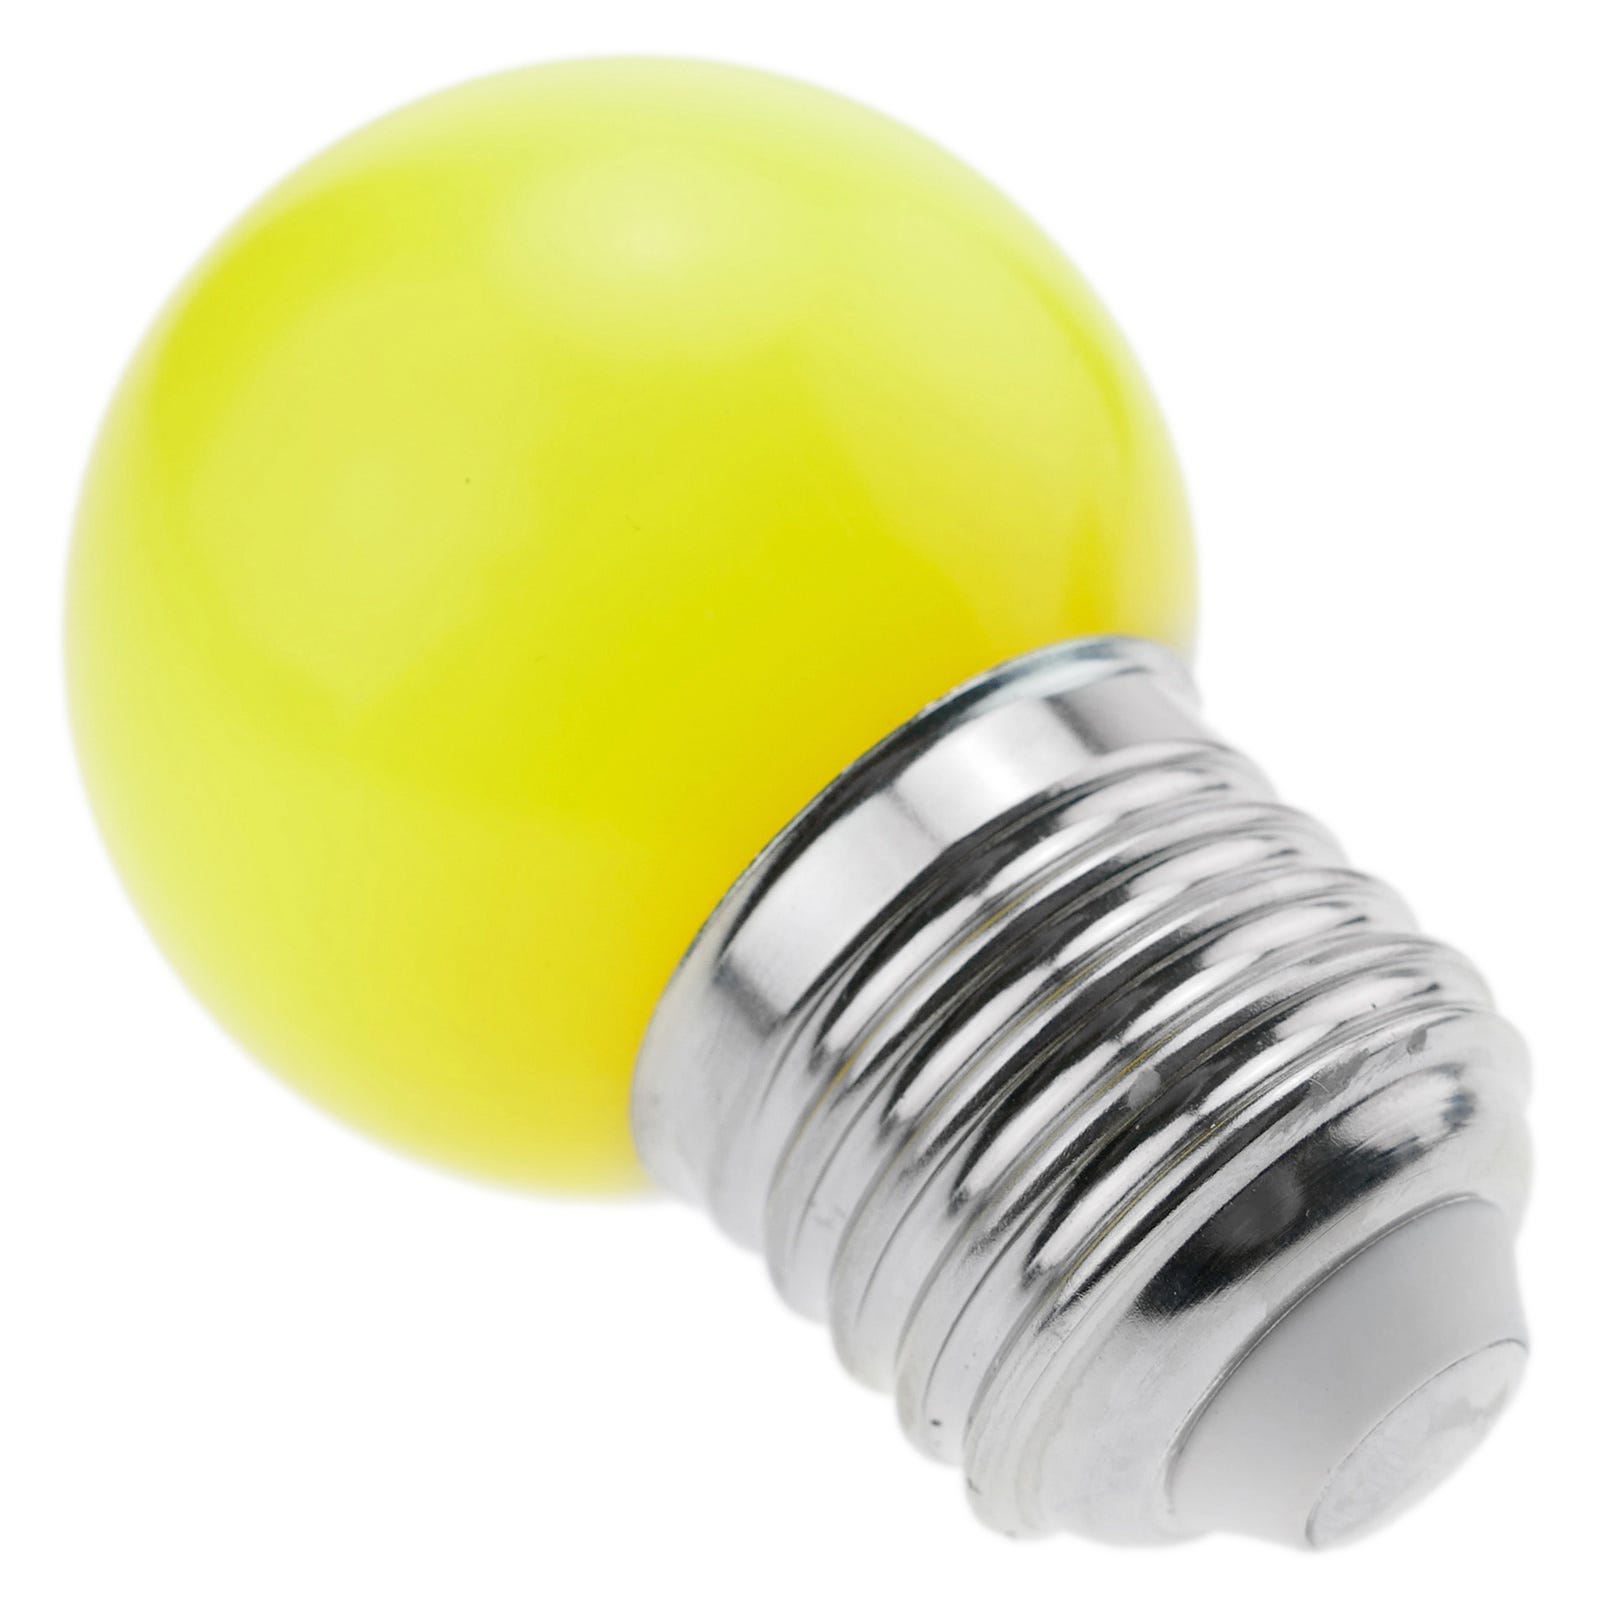 Leroy Merlin Ampoule à vis E27 - LED - 5,5W (équi 40W) - 2700K / lumière  chaude (jaune) - Prix pas cher